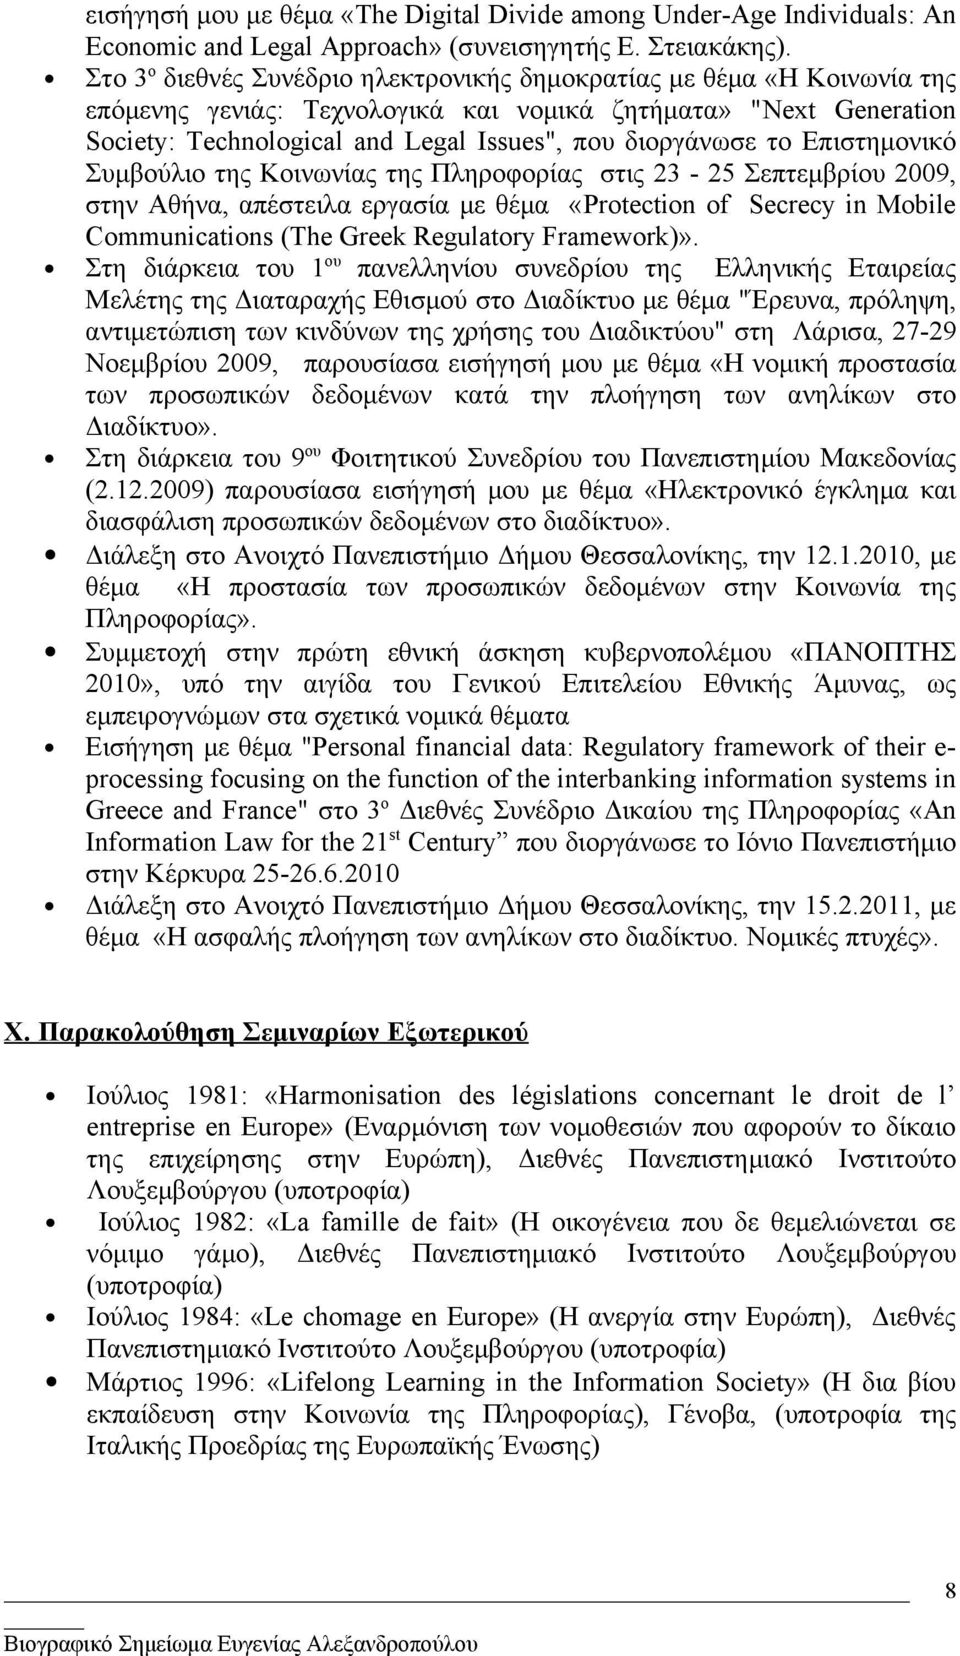 το Επιστημονικό Συμβούλιο της Κοινωνίας της Πληροφορίας στις 23-25 Σεπτεμβρίου 2009, στην Αθήνα, απέστειλα εργασία με θέμα «Protection of Secrecy in Mobile Communications (The Greek Regulatory